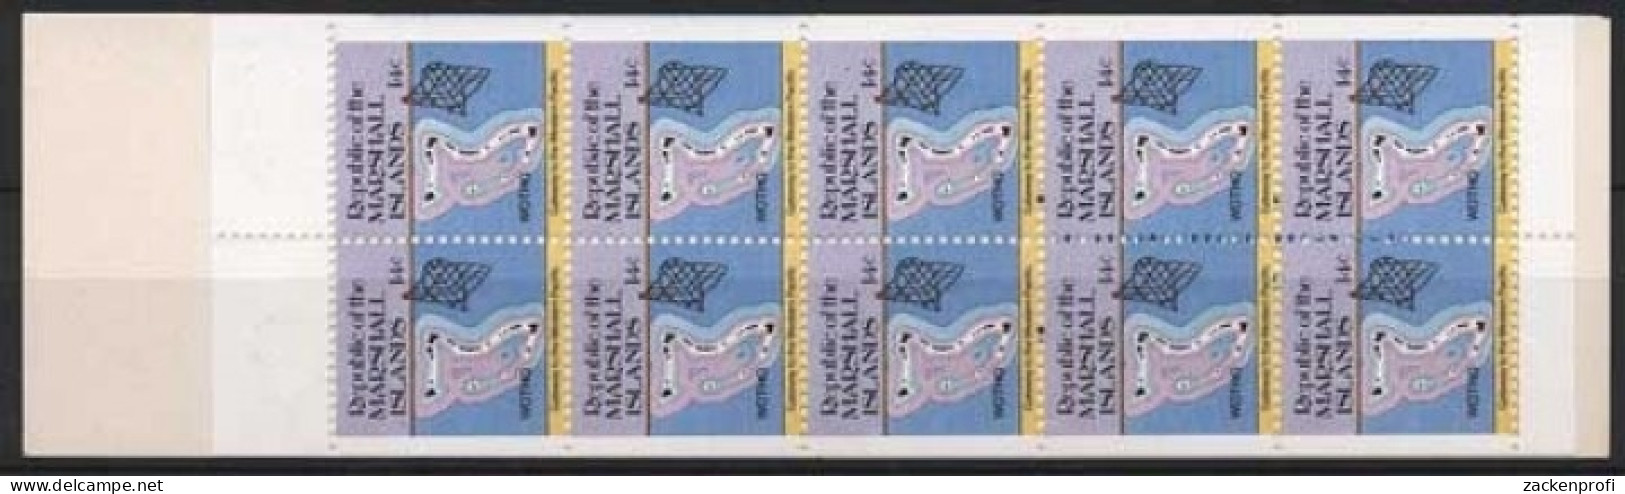 Marshall-Inseln 1985 Freimarken: Inselkarten 40 MH Postfrisch (C21495) - Islas Marshall